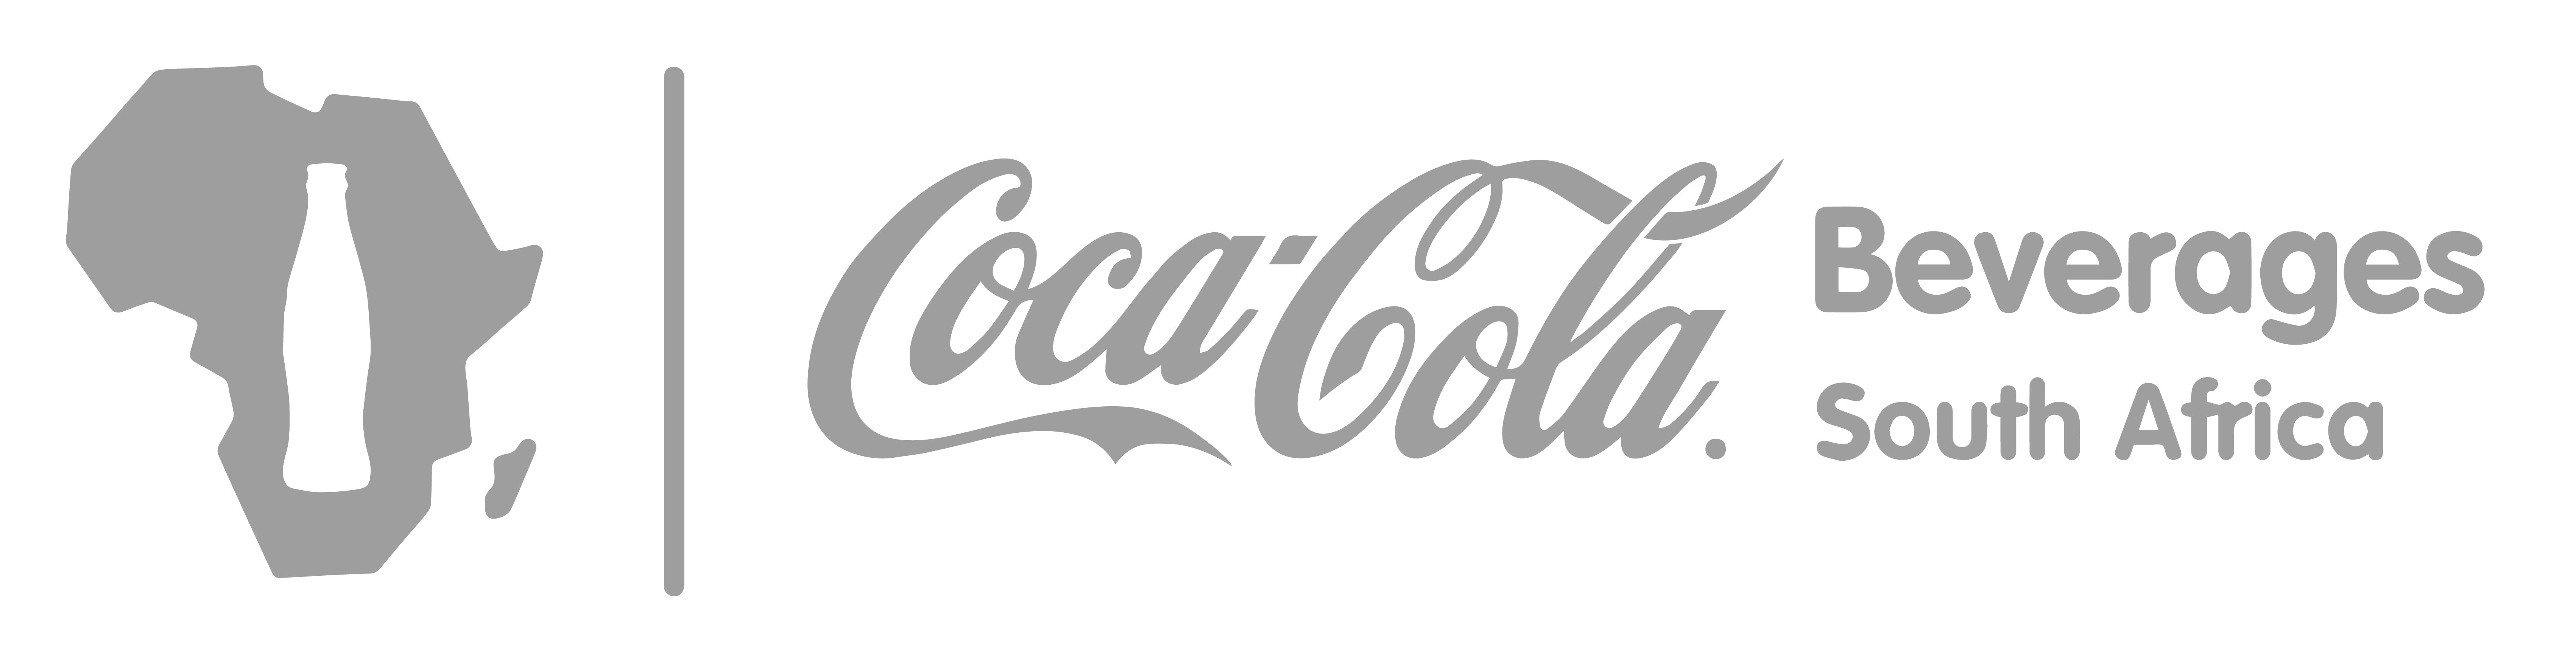 New Coca Cola